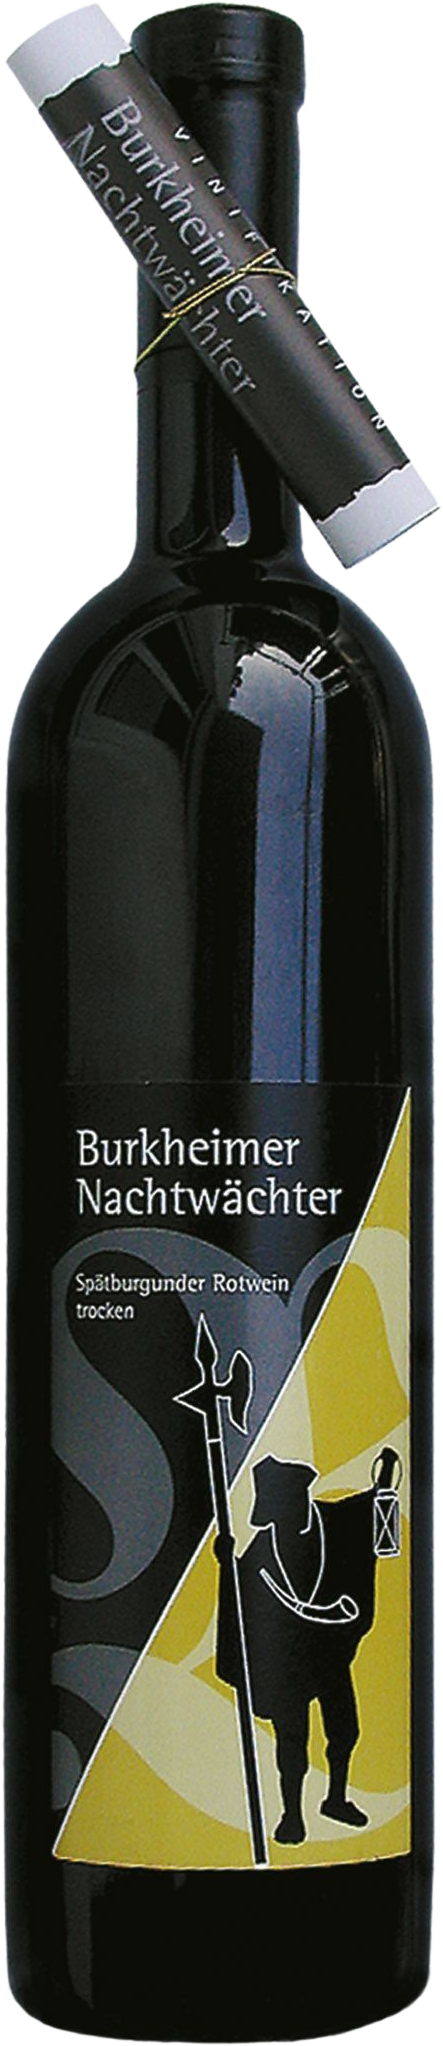 Spätburgunder - 2019 Winzer Kaiserstuhl Burkheimer - Burkheim Feuerberg am Nachtwächter Falstaff Falstaff